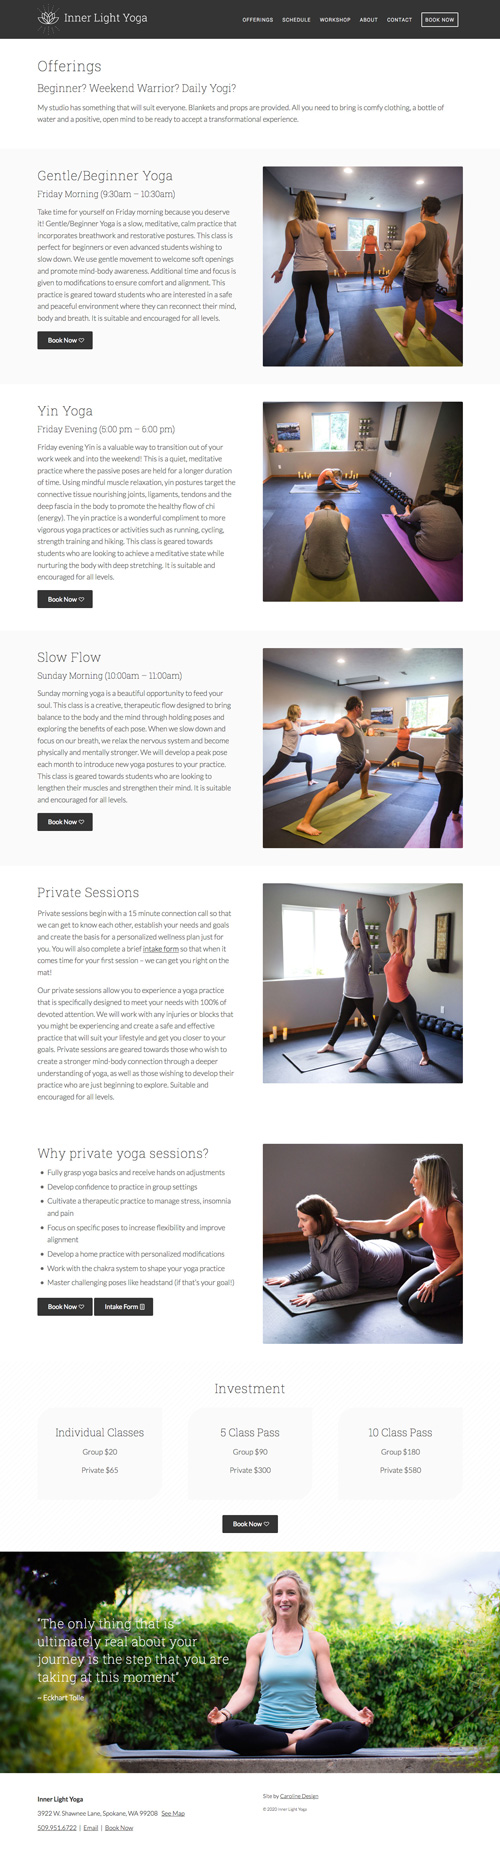 Yoga Website Design & Branding: Inner Light Yoga Studio